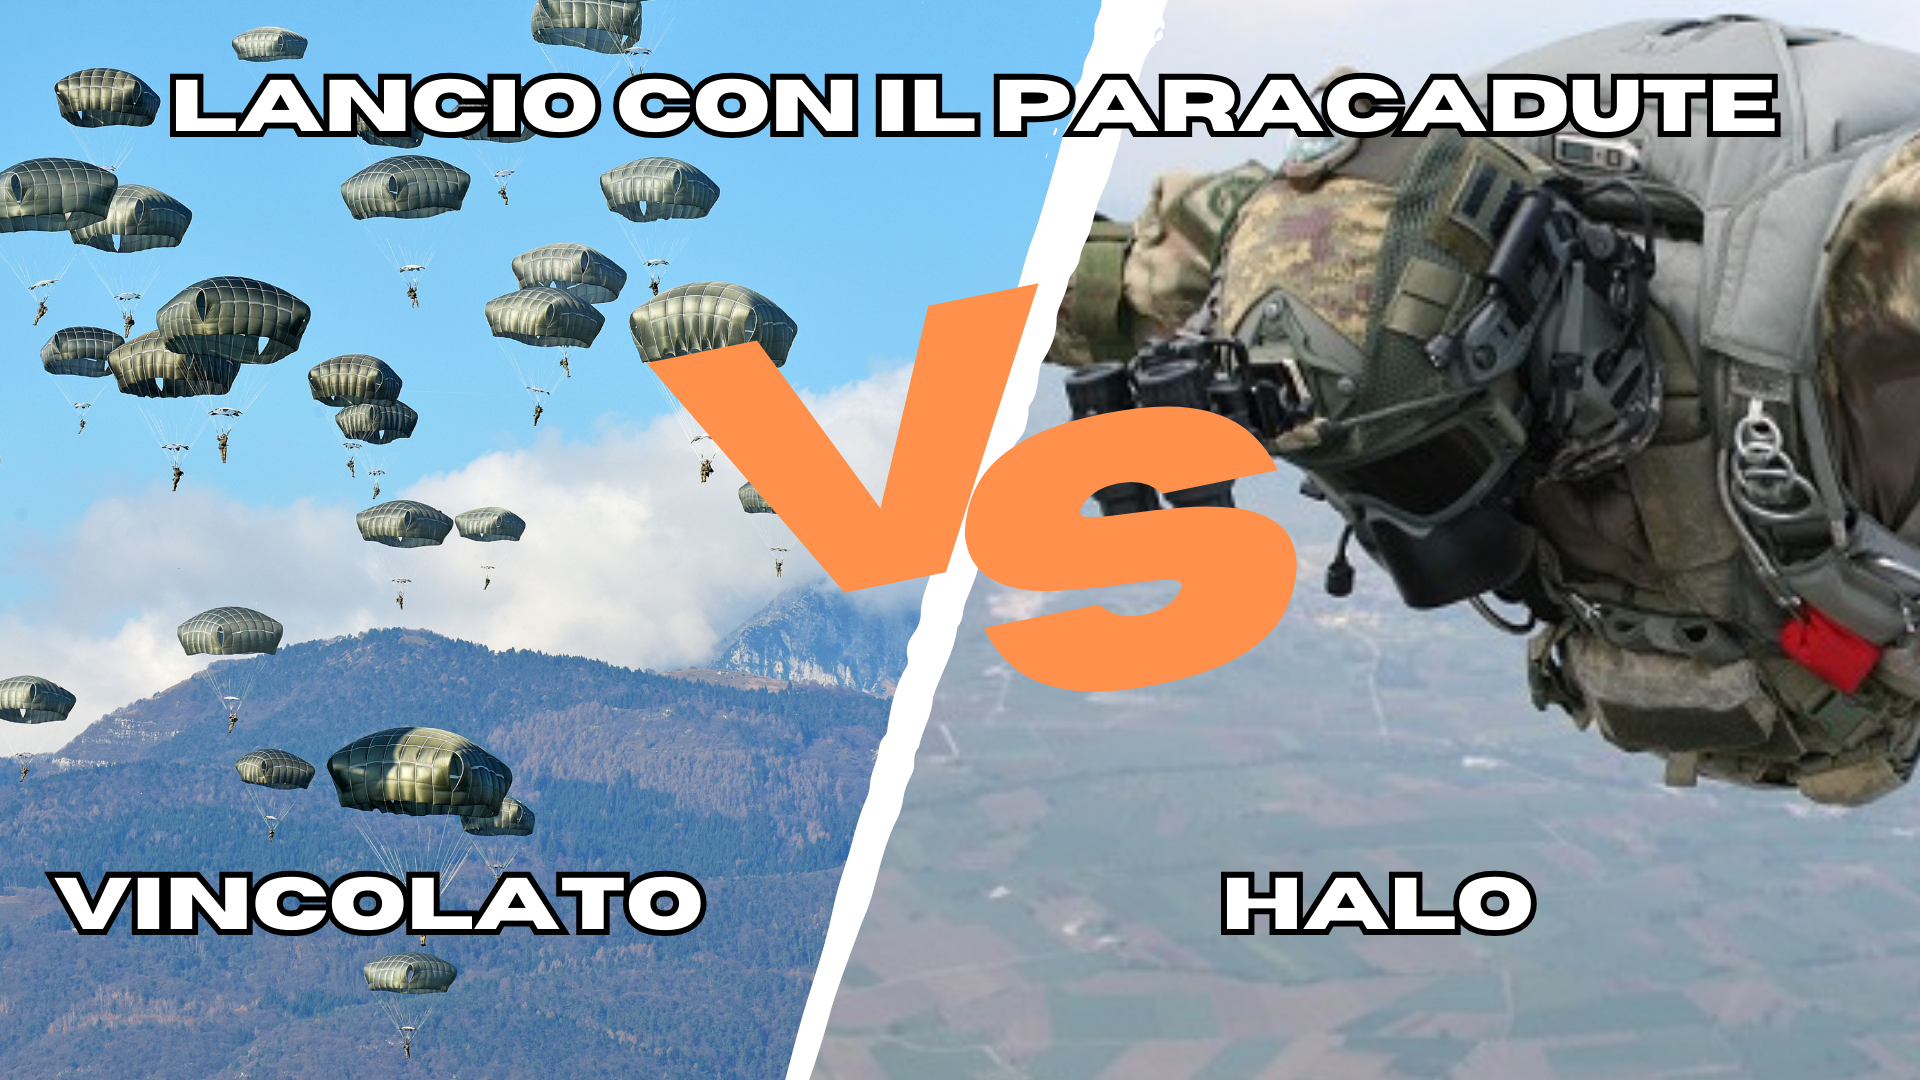 Differenze tra Lancio con il paracadute vincolato e lancio HALO